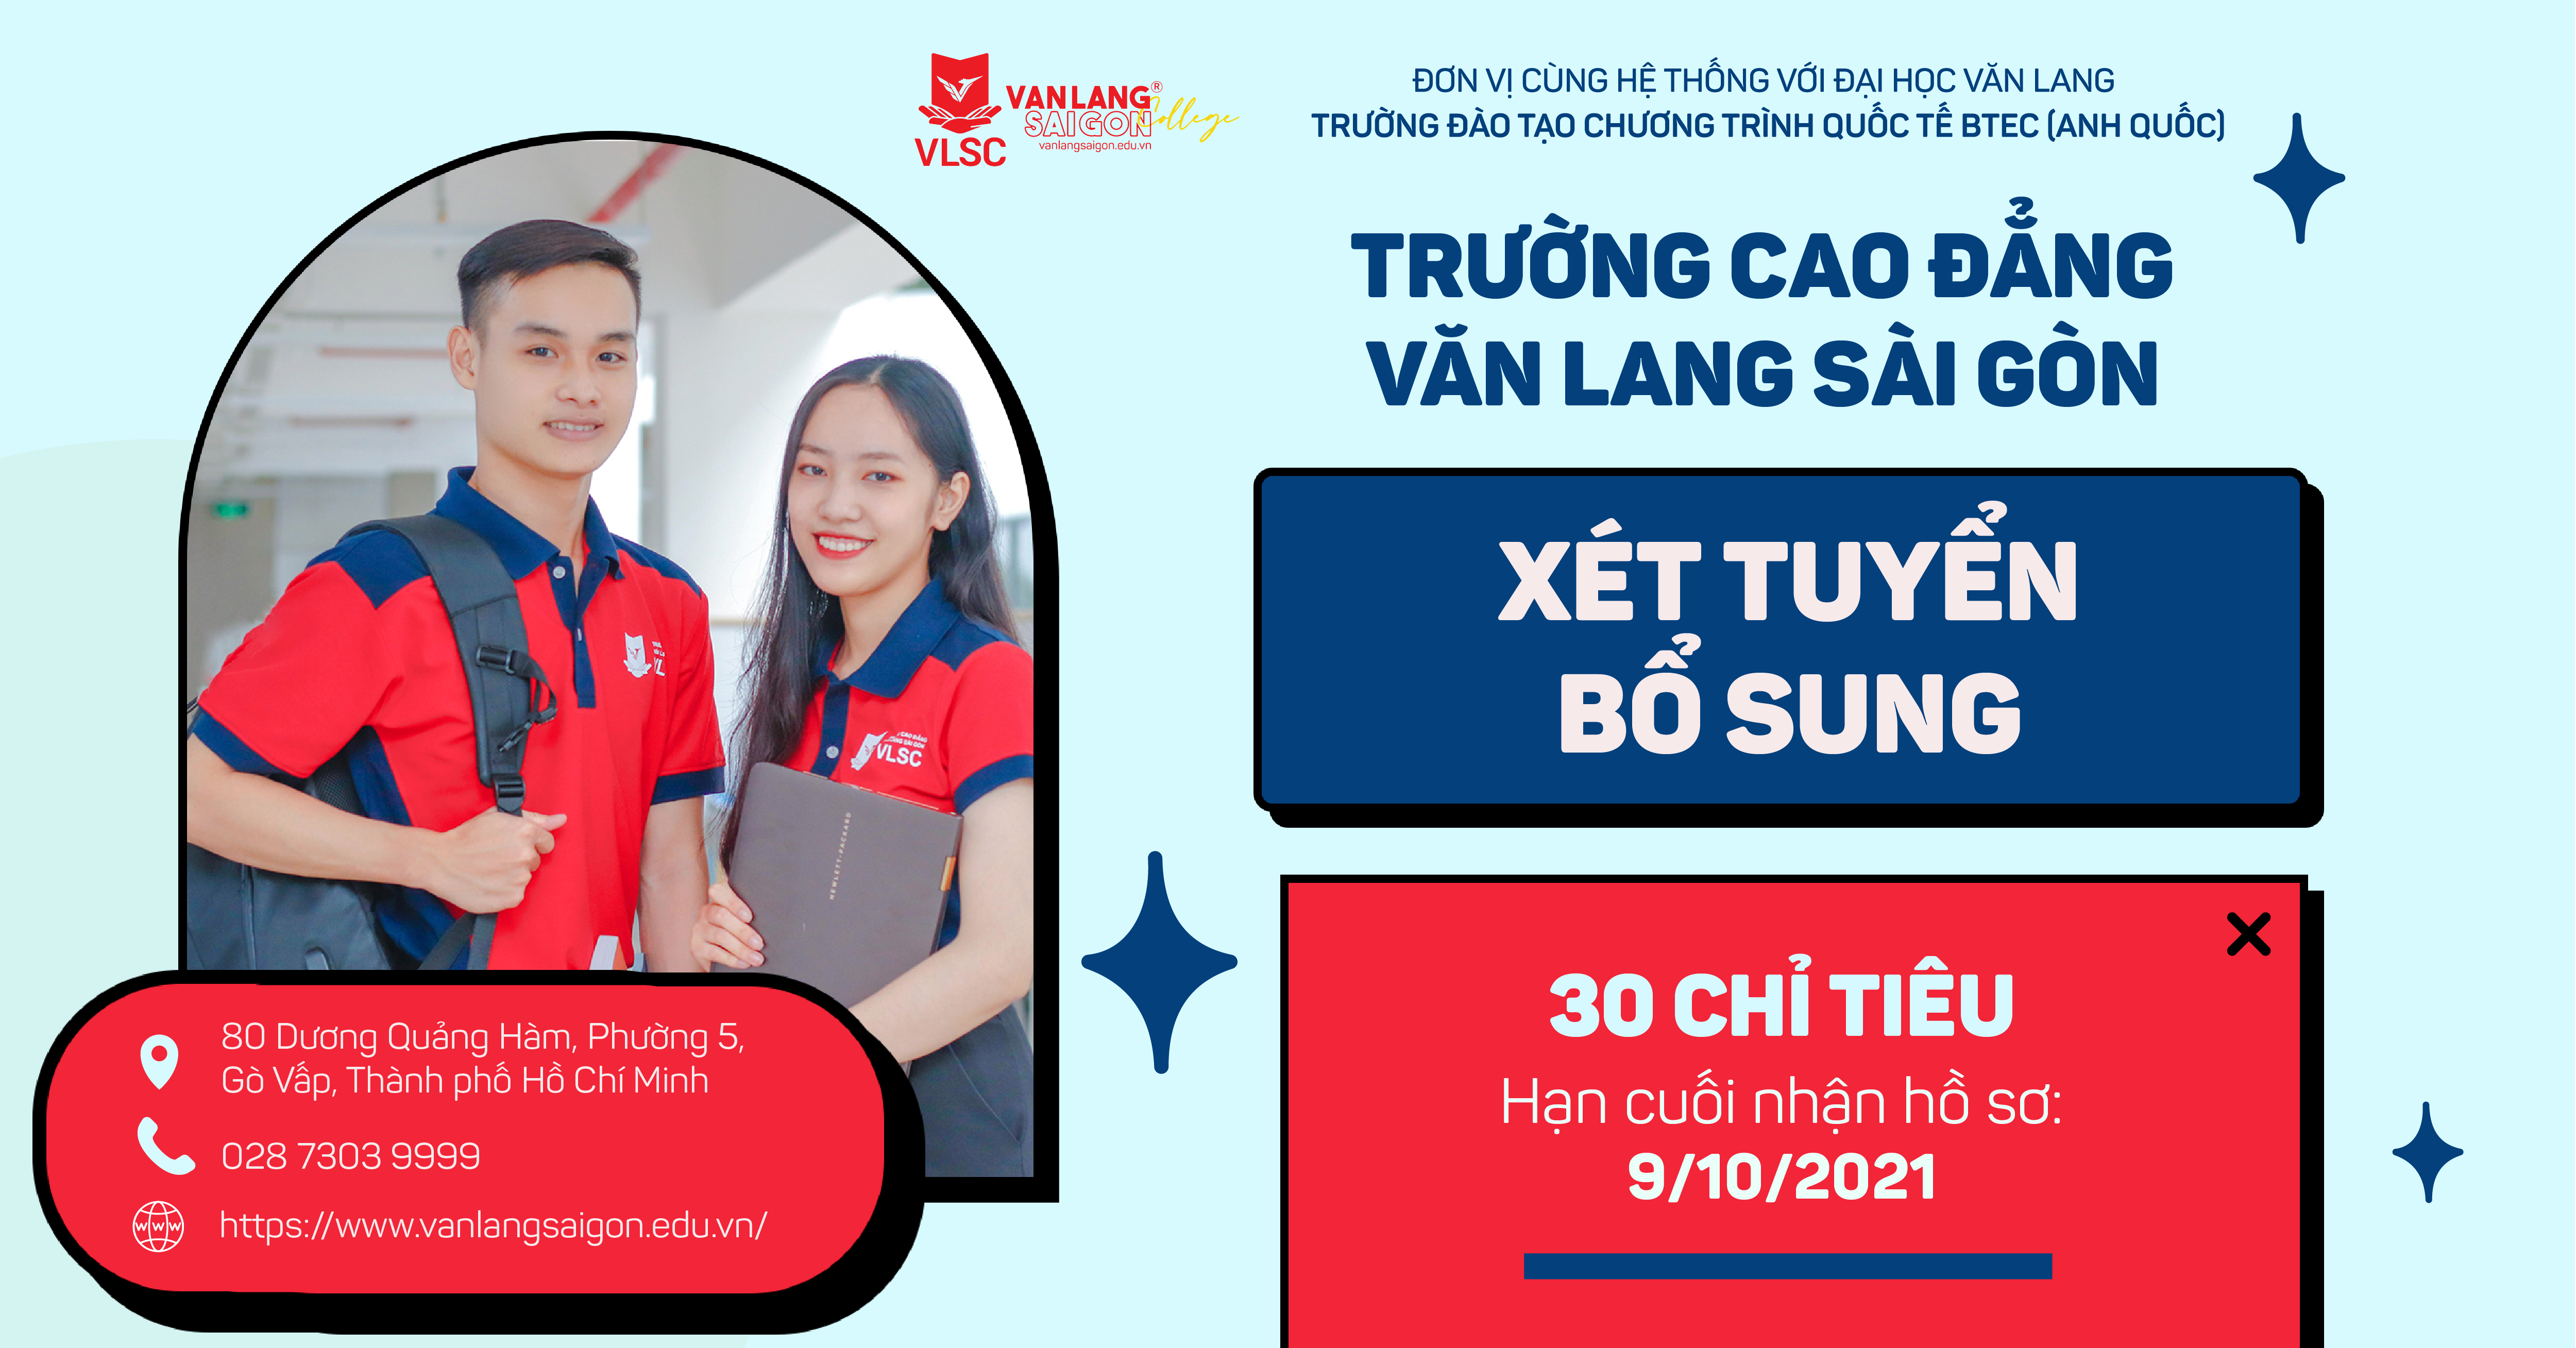 Trường Cao đẳng Văn Lang Sài Gòn xét tuyển bổ sung 30 chỉ tiêu, nhận hồ sơ xét tuyển và làm thủ tục nhập học từ 1/10 đến 9/10/2021